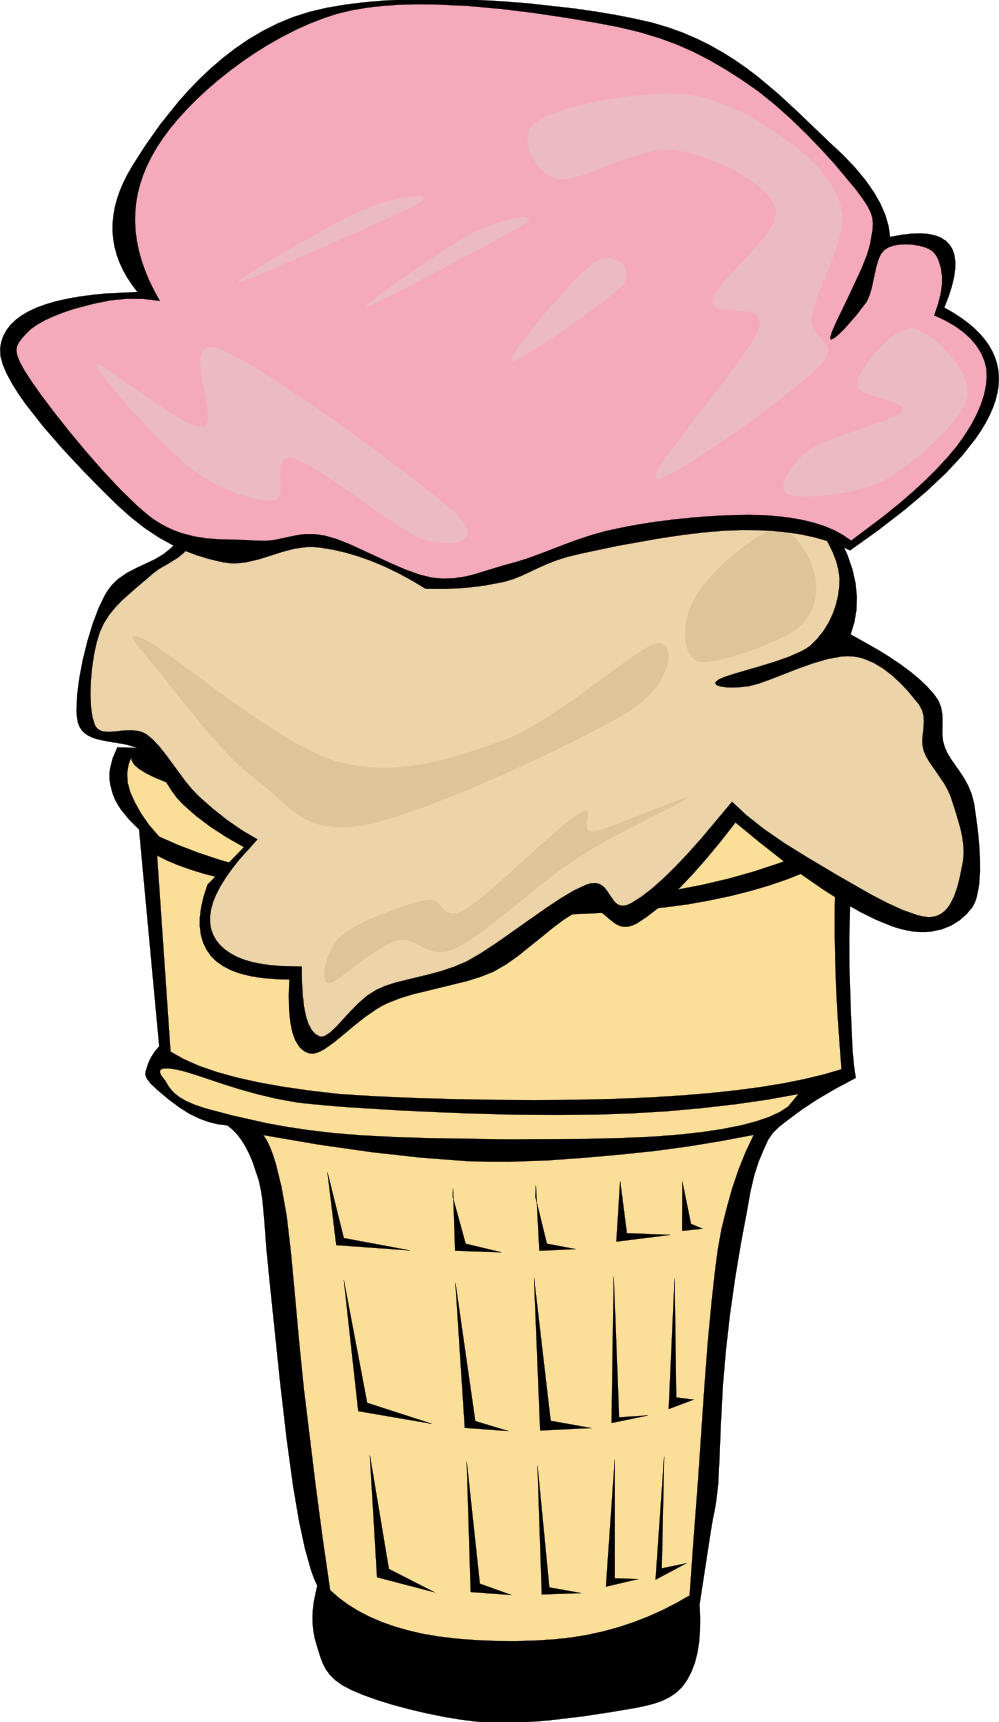 Ice cream cone clip art black and white free